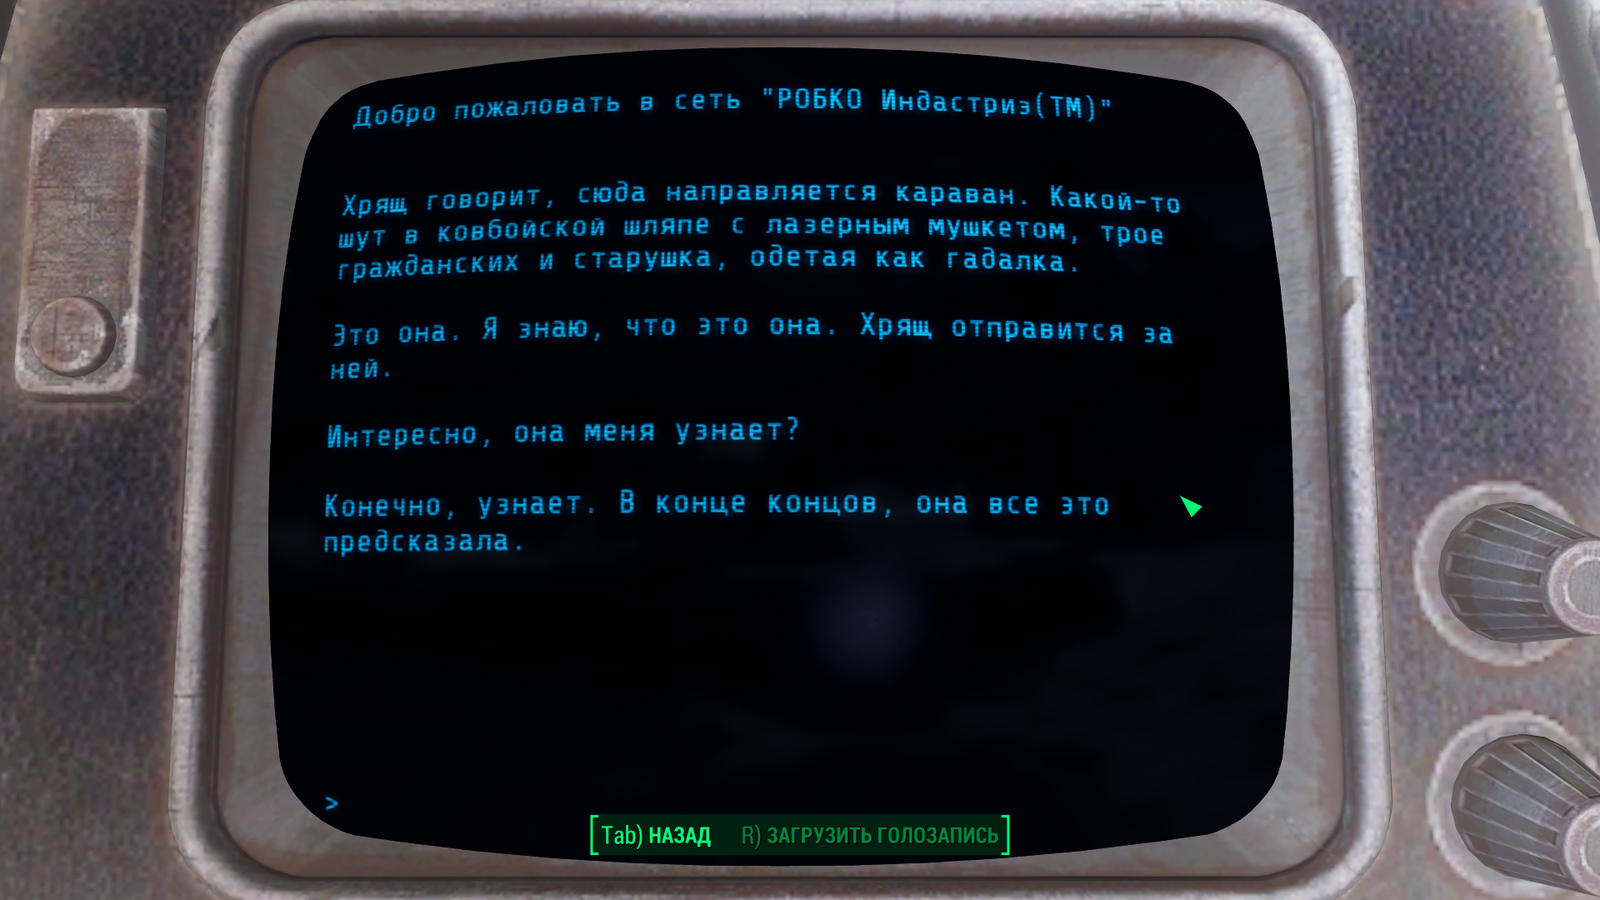 Fallout 4 сеть робко индастриз фото 16